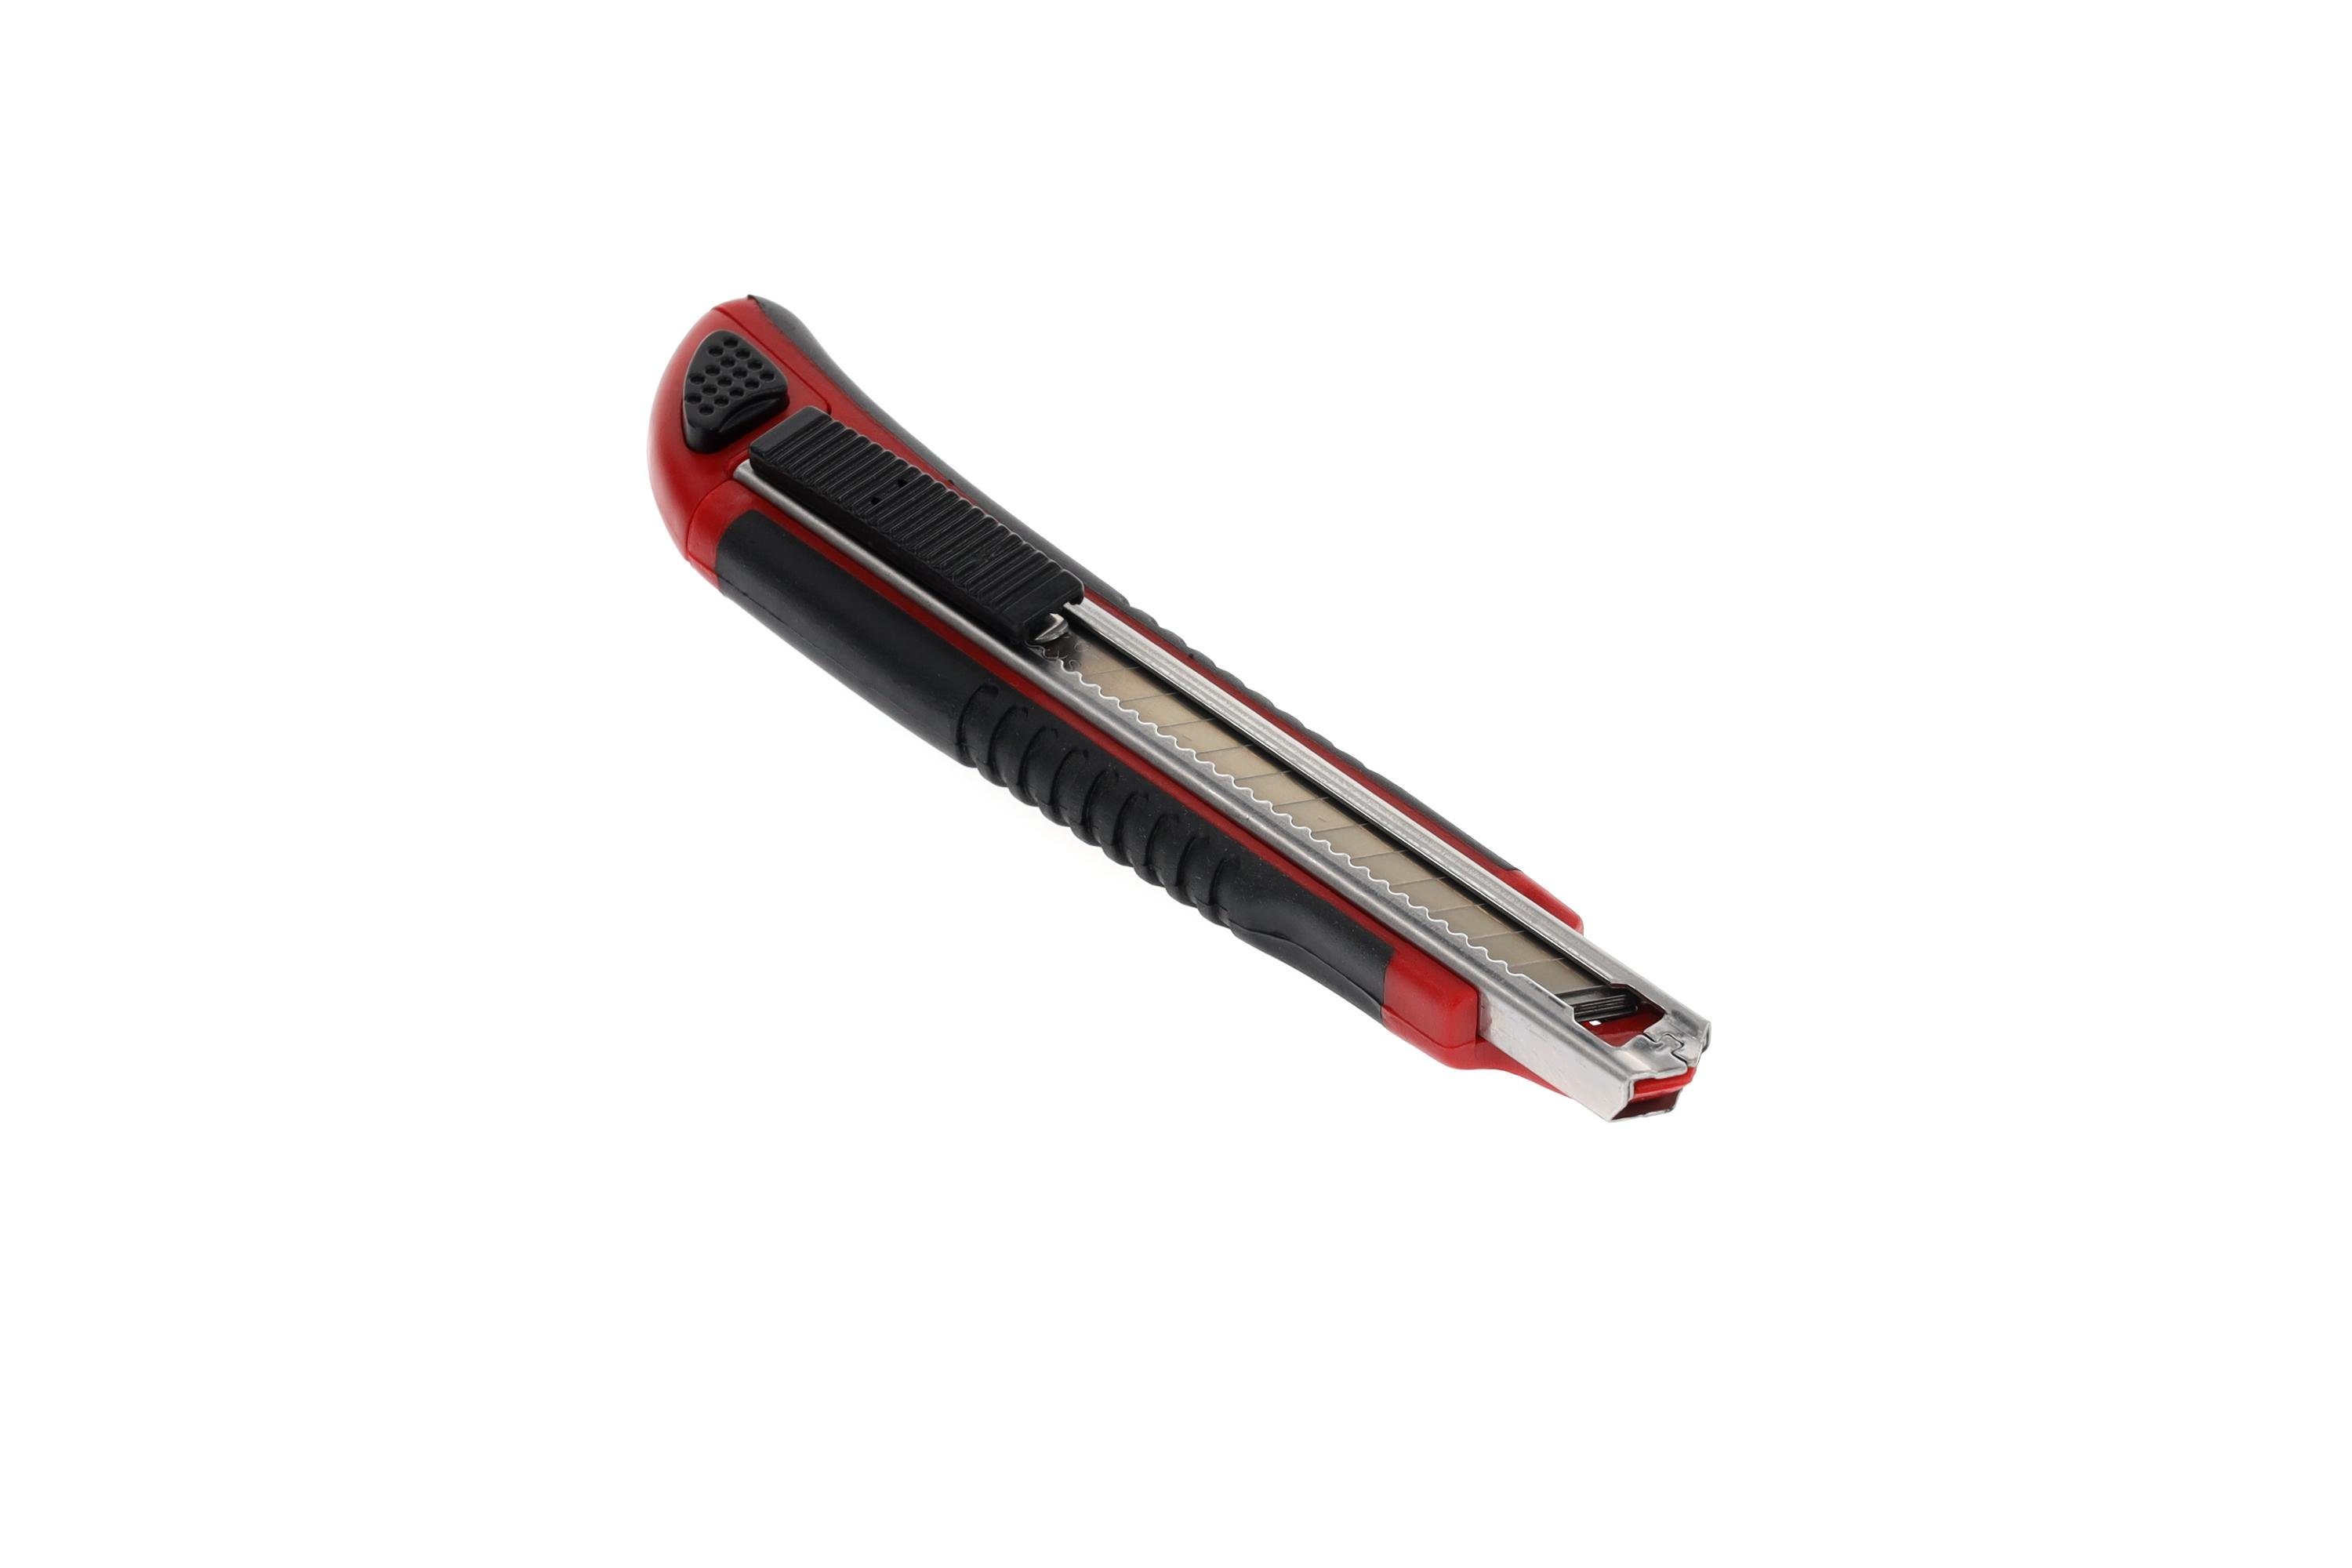 Red Gedore Cuttermesser 9 Cuttermesser 5 R93200010 mm Klingenbreite